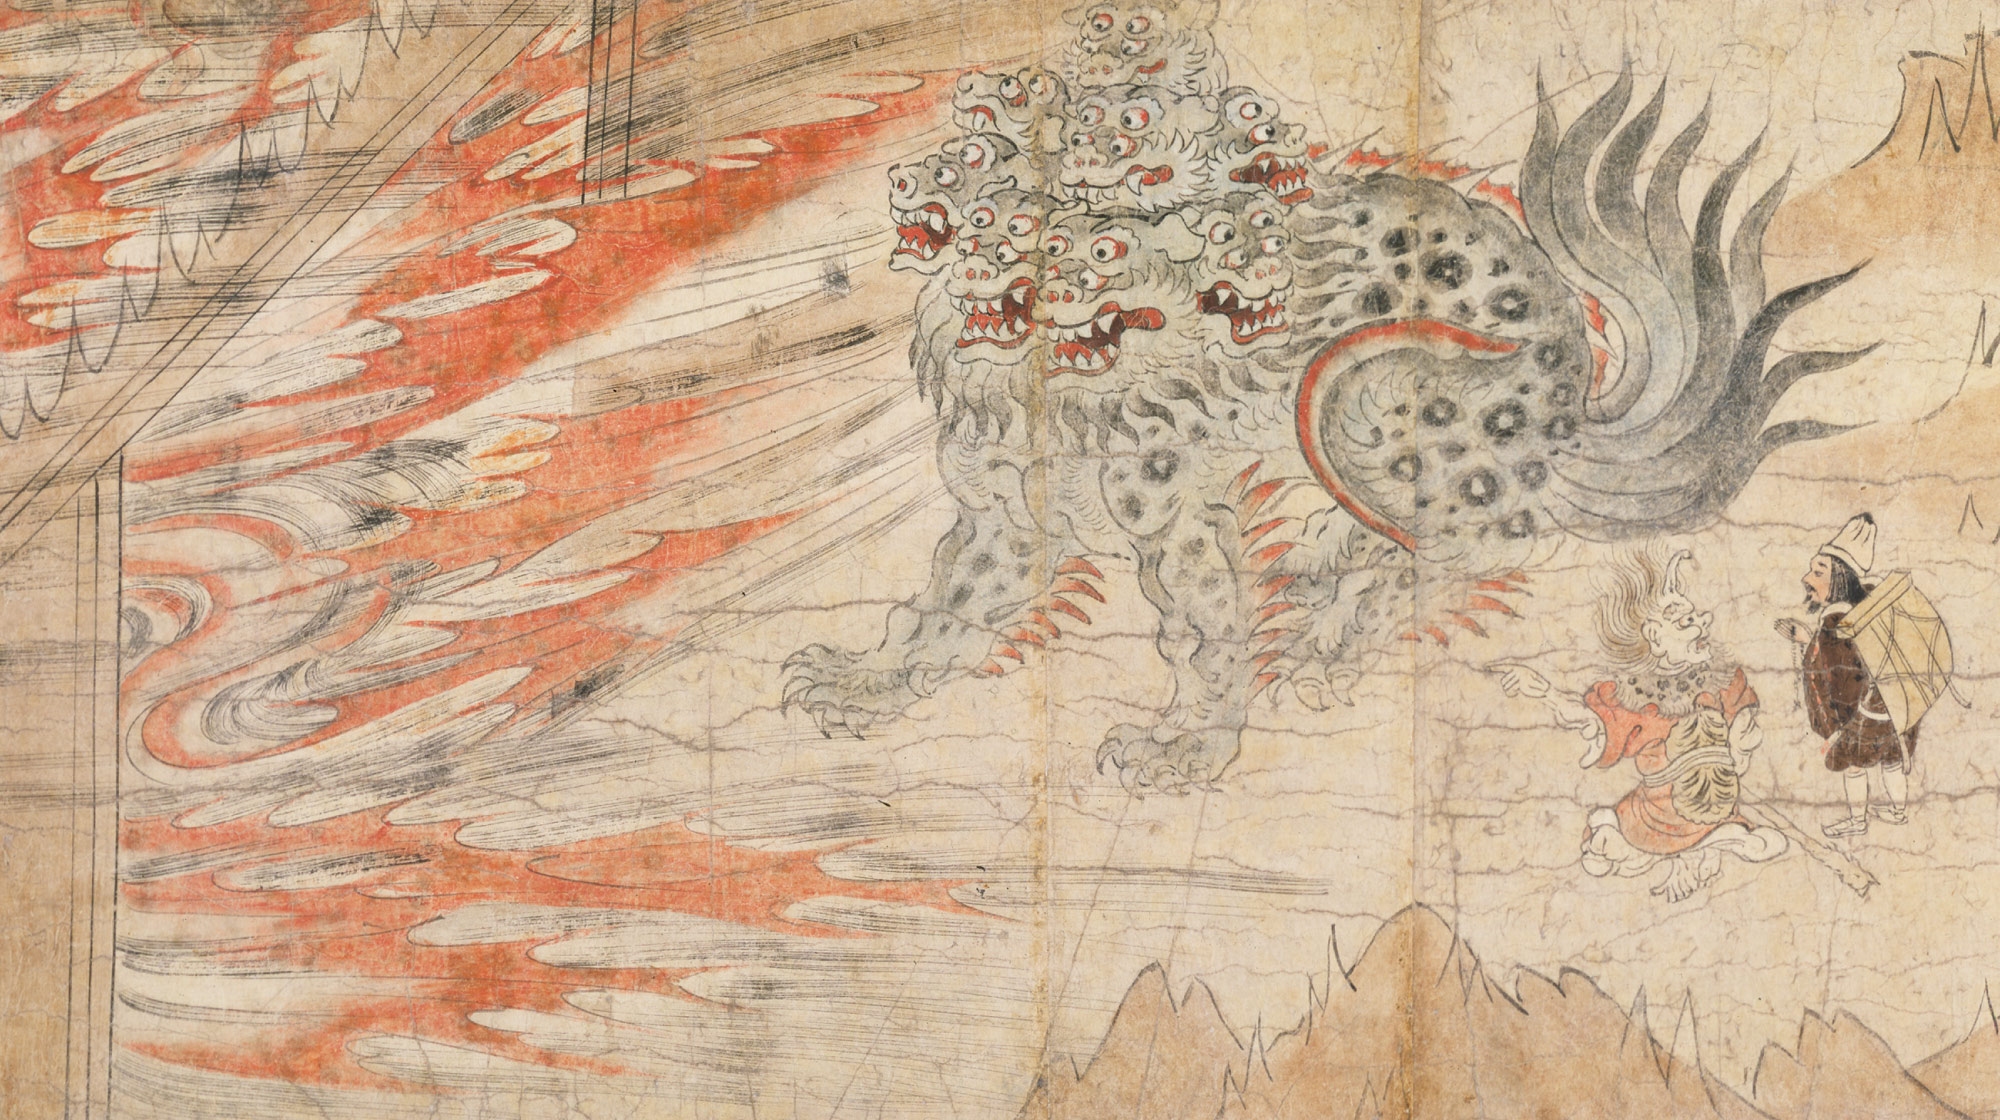 Illustrated Legends of the Kitano Tenjin Shrine (Kitano Tenjin engi emaki)